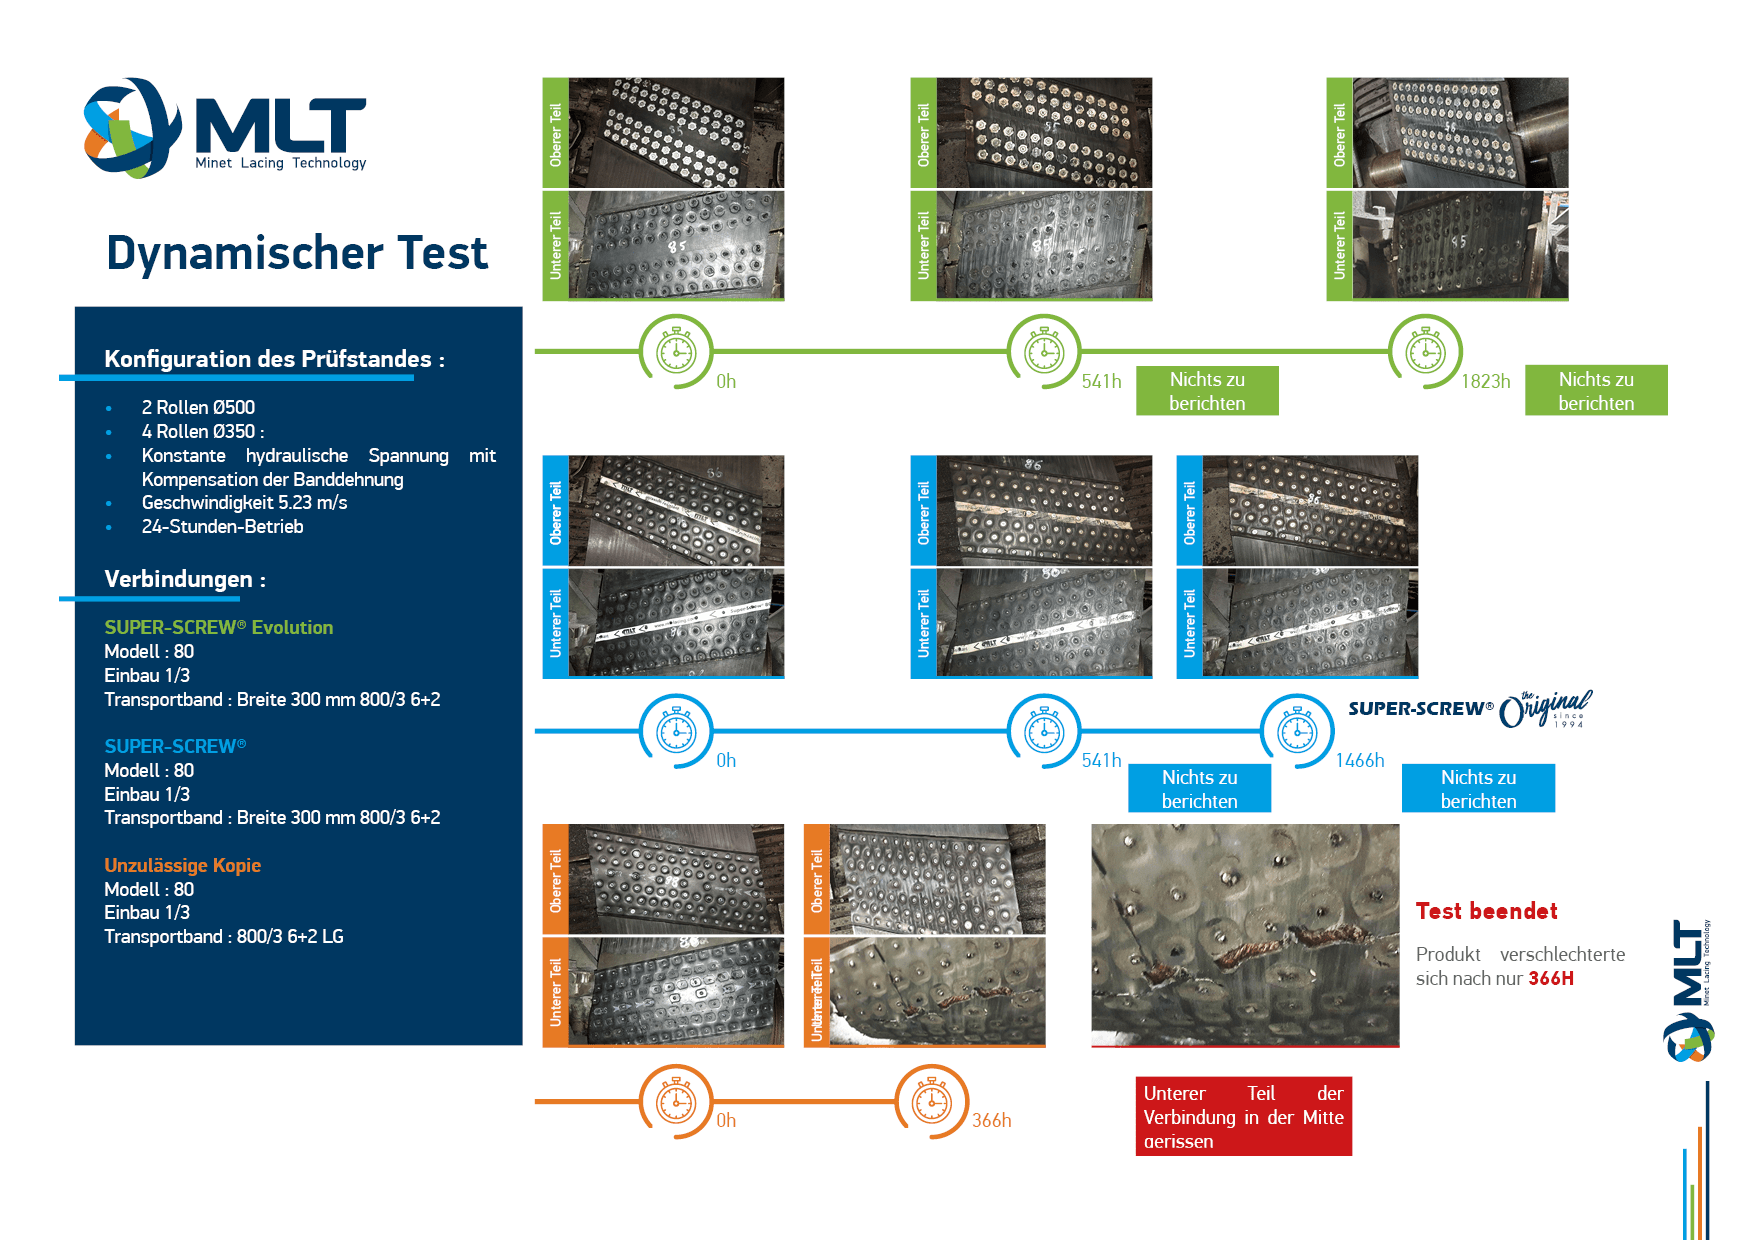 MLT_Offizielle Information - Dynamischer Test